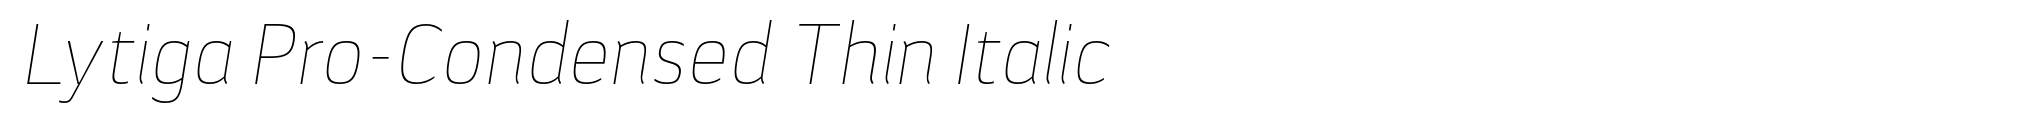 Lytiga Pro-Condensed Thin Italic image